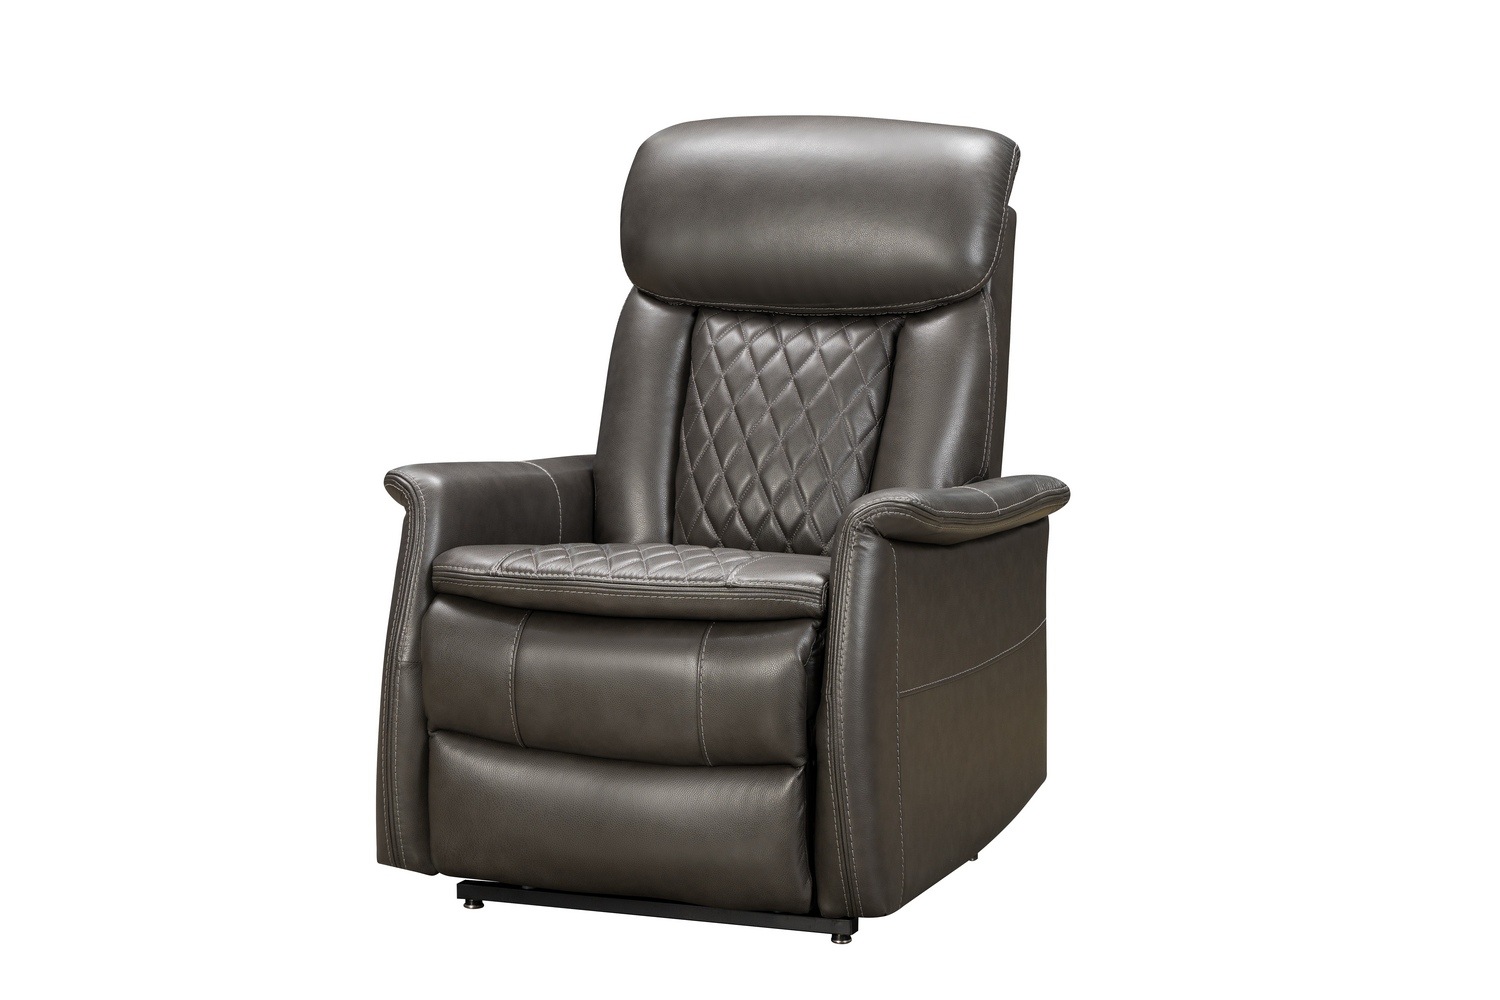 Barcalounger Lauren Lift Chair Recliner Chair with Power Head Rest, Power Lumbar and Lay Flat Mechanism - Matteo Smokey Gray/Leather Match